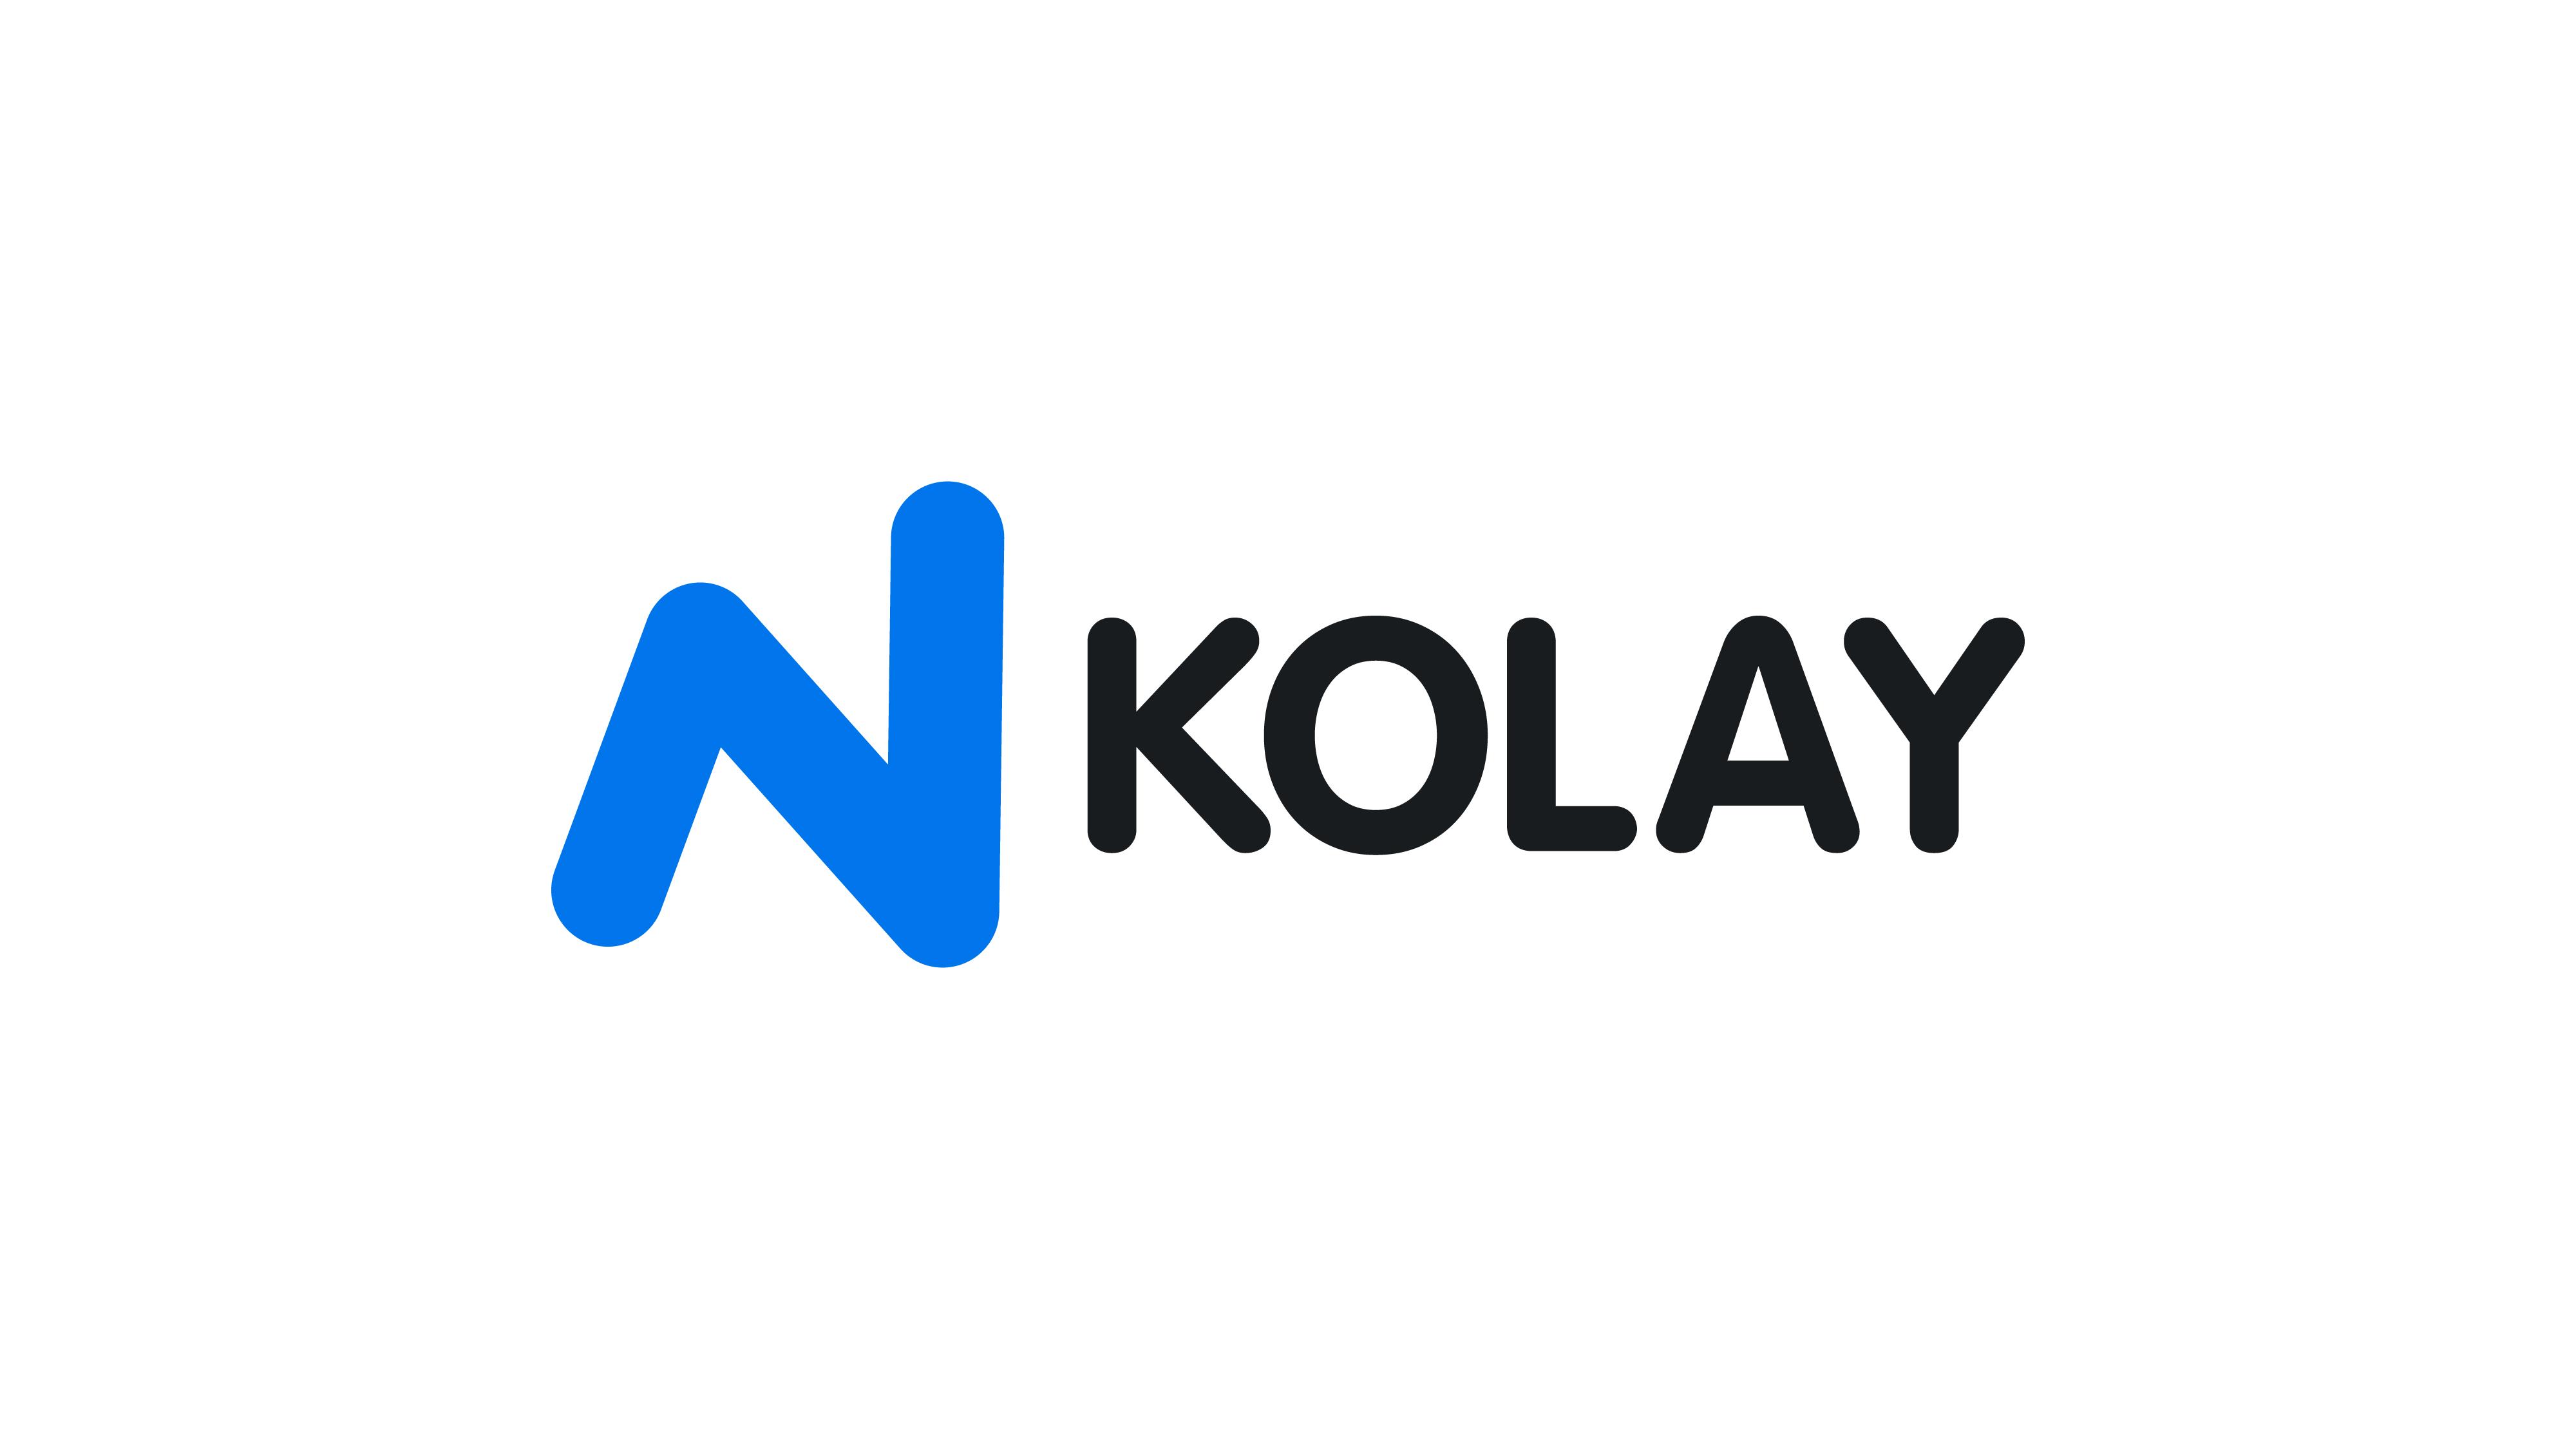 N Kolay logo-01[2]